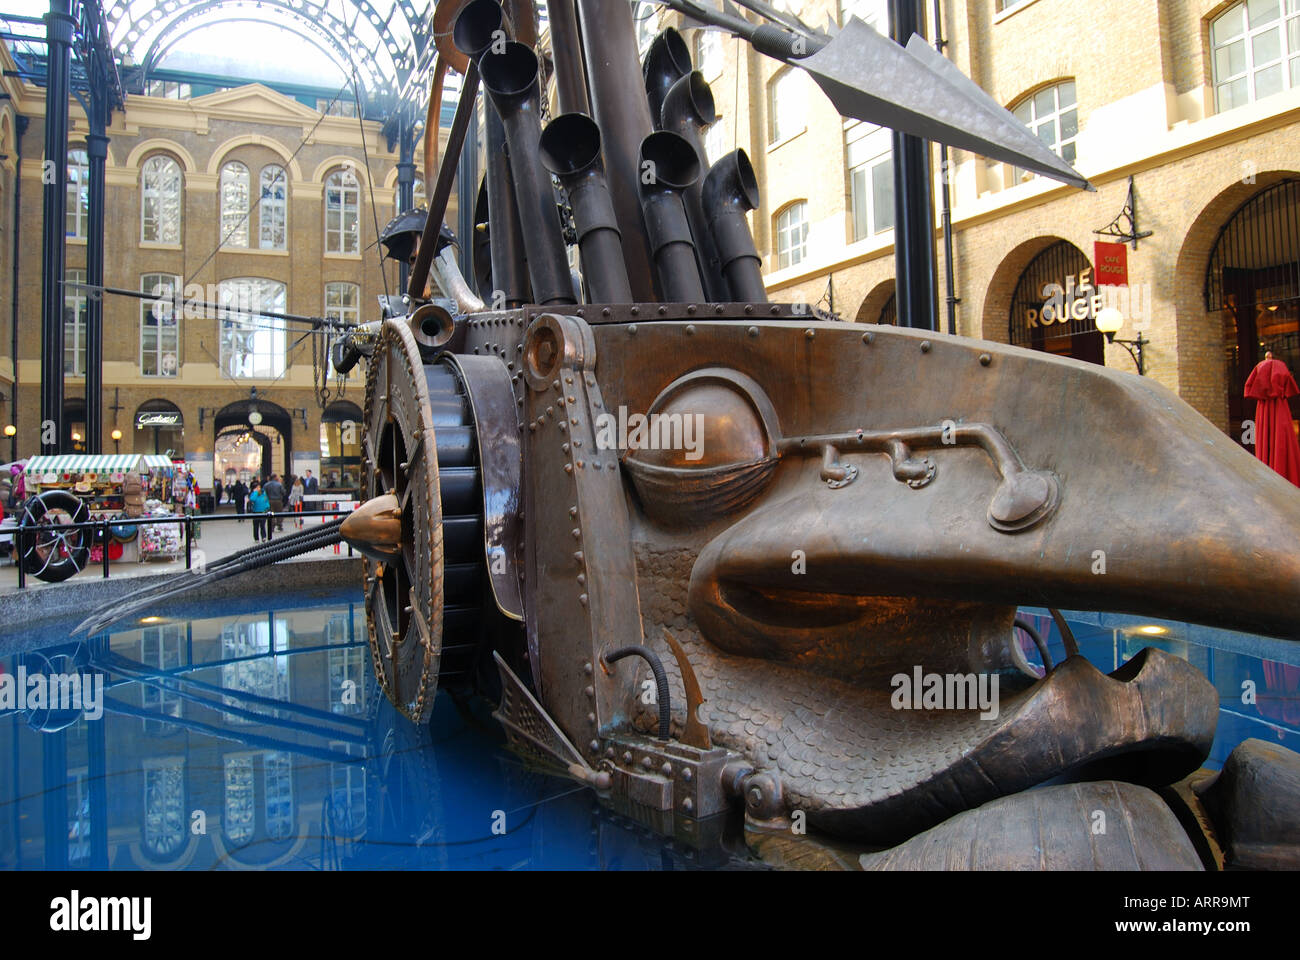 David Kemp "navigatori" Scultura, fieno la Galleria Arcade, South Bank, Southwark, Londra, Inghilterra, Regno Unito Foto Stock